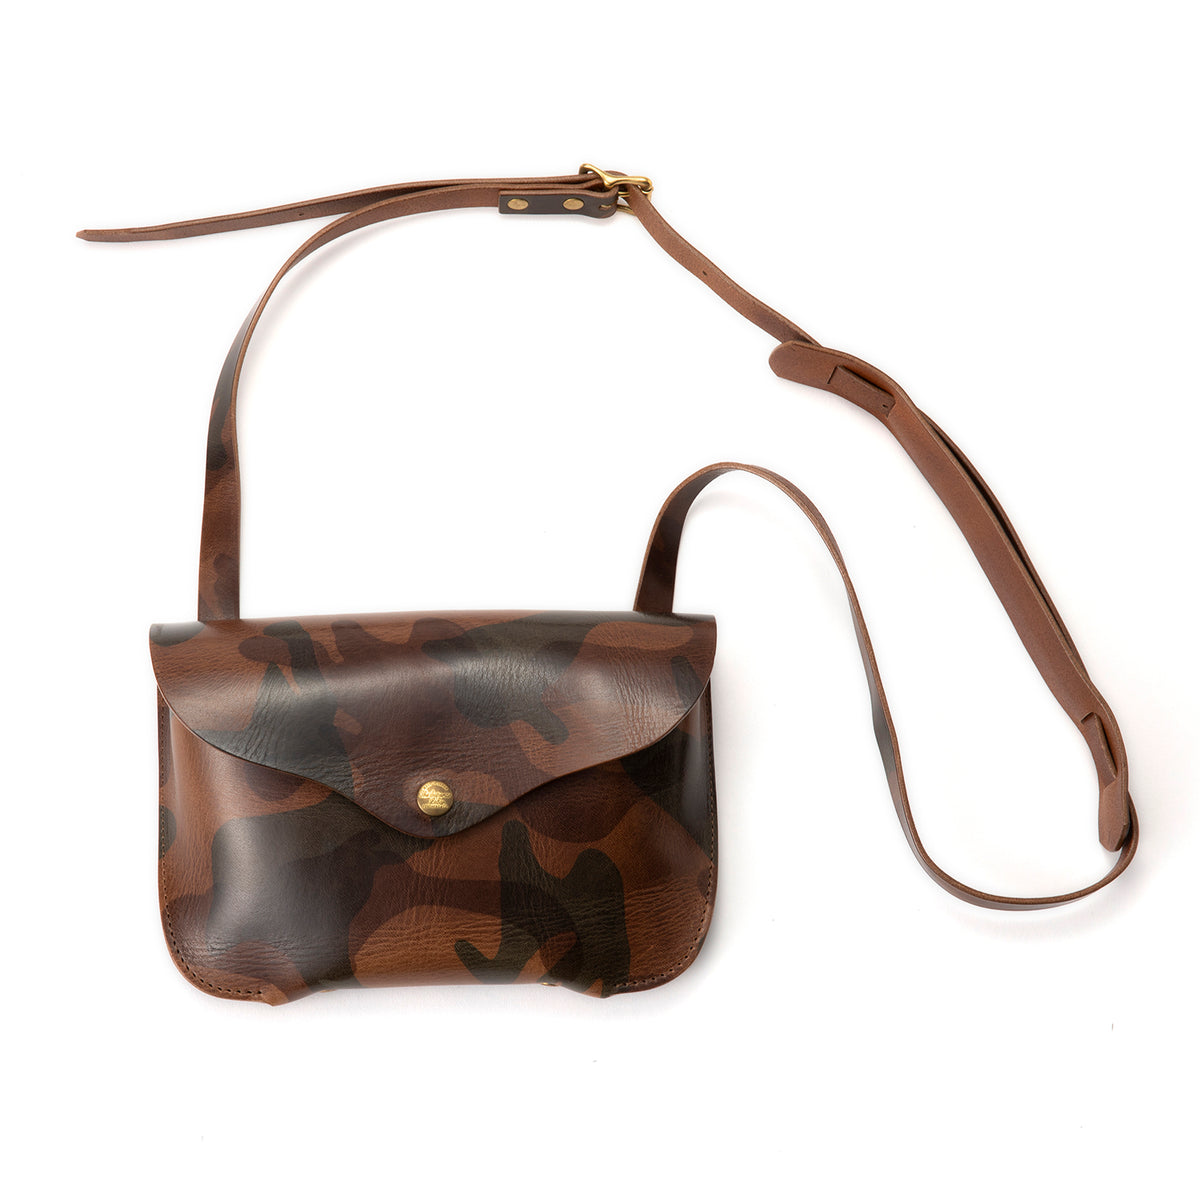 THE SUPERIOR LABOR | ザシュペリオールレイバー Leather craft bag